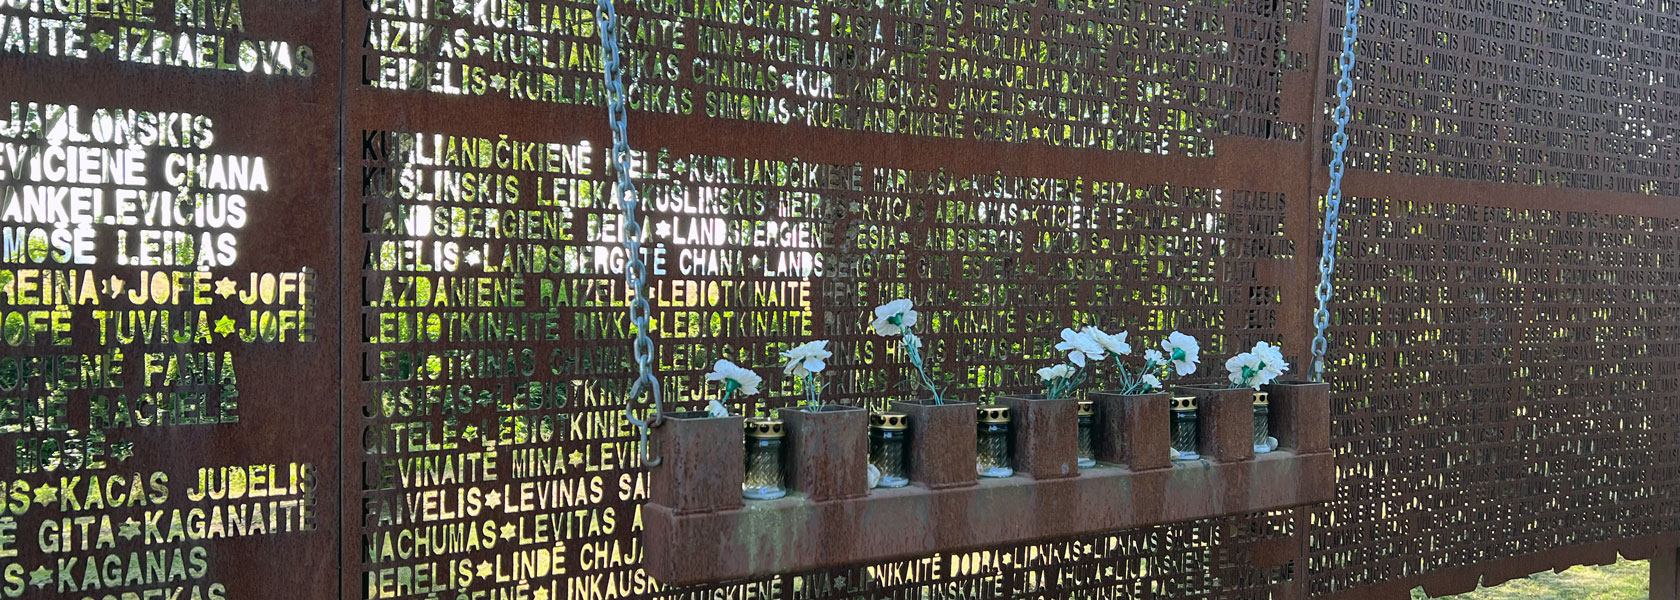 Eine Gedenktafel, vor der Blumen in Behältern aufgehängt sind